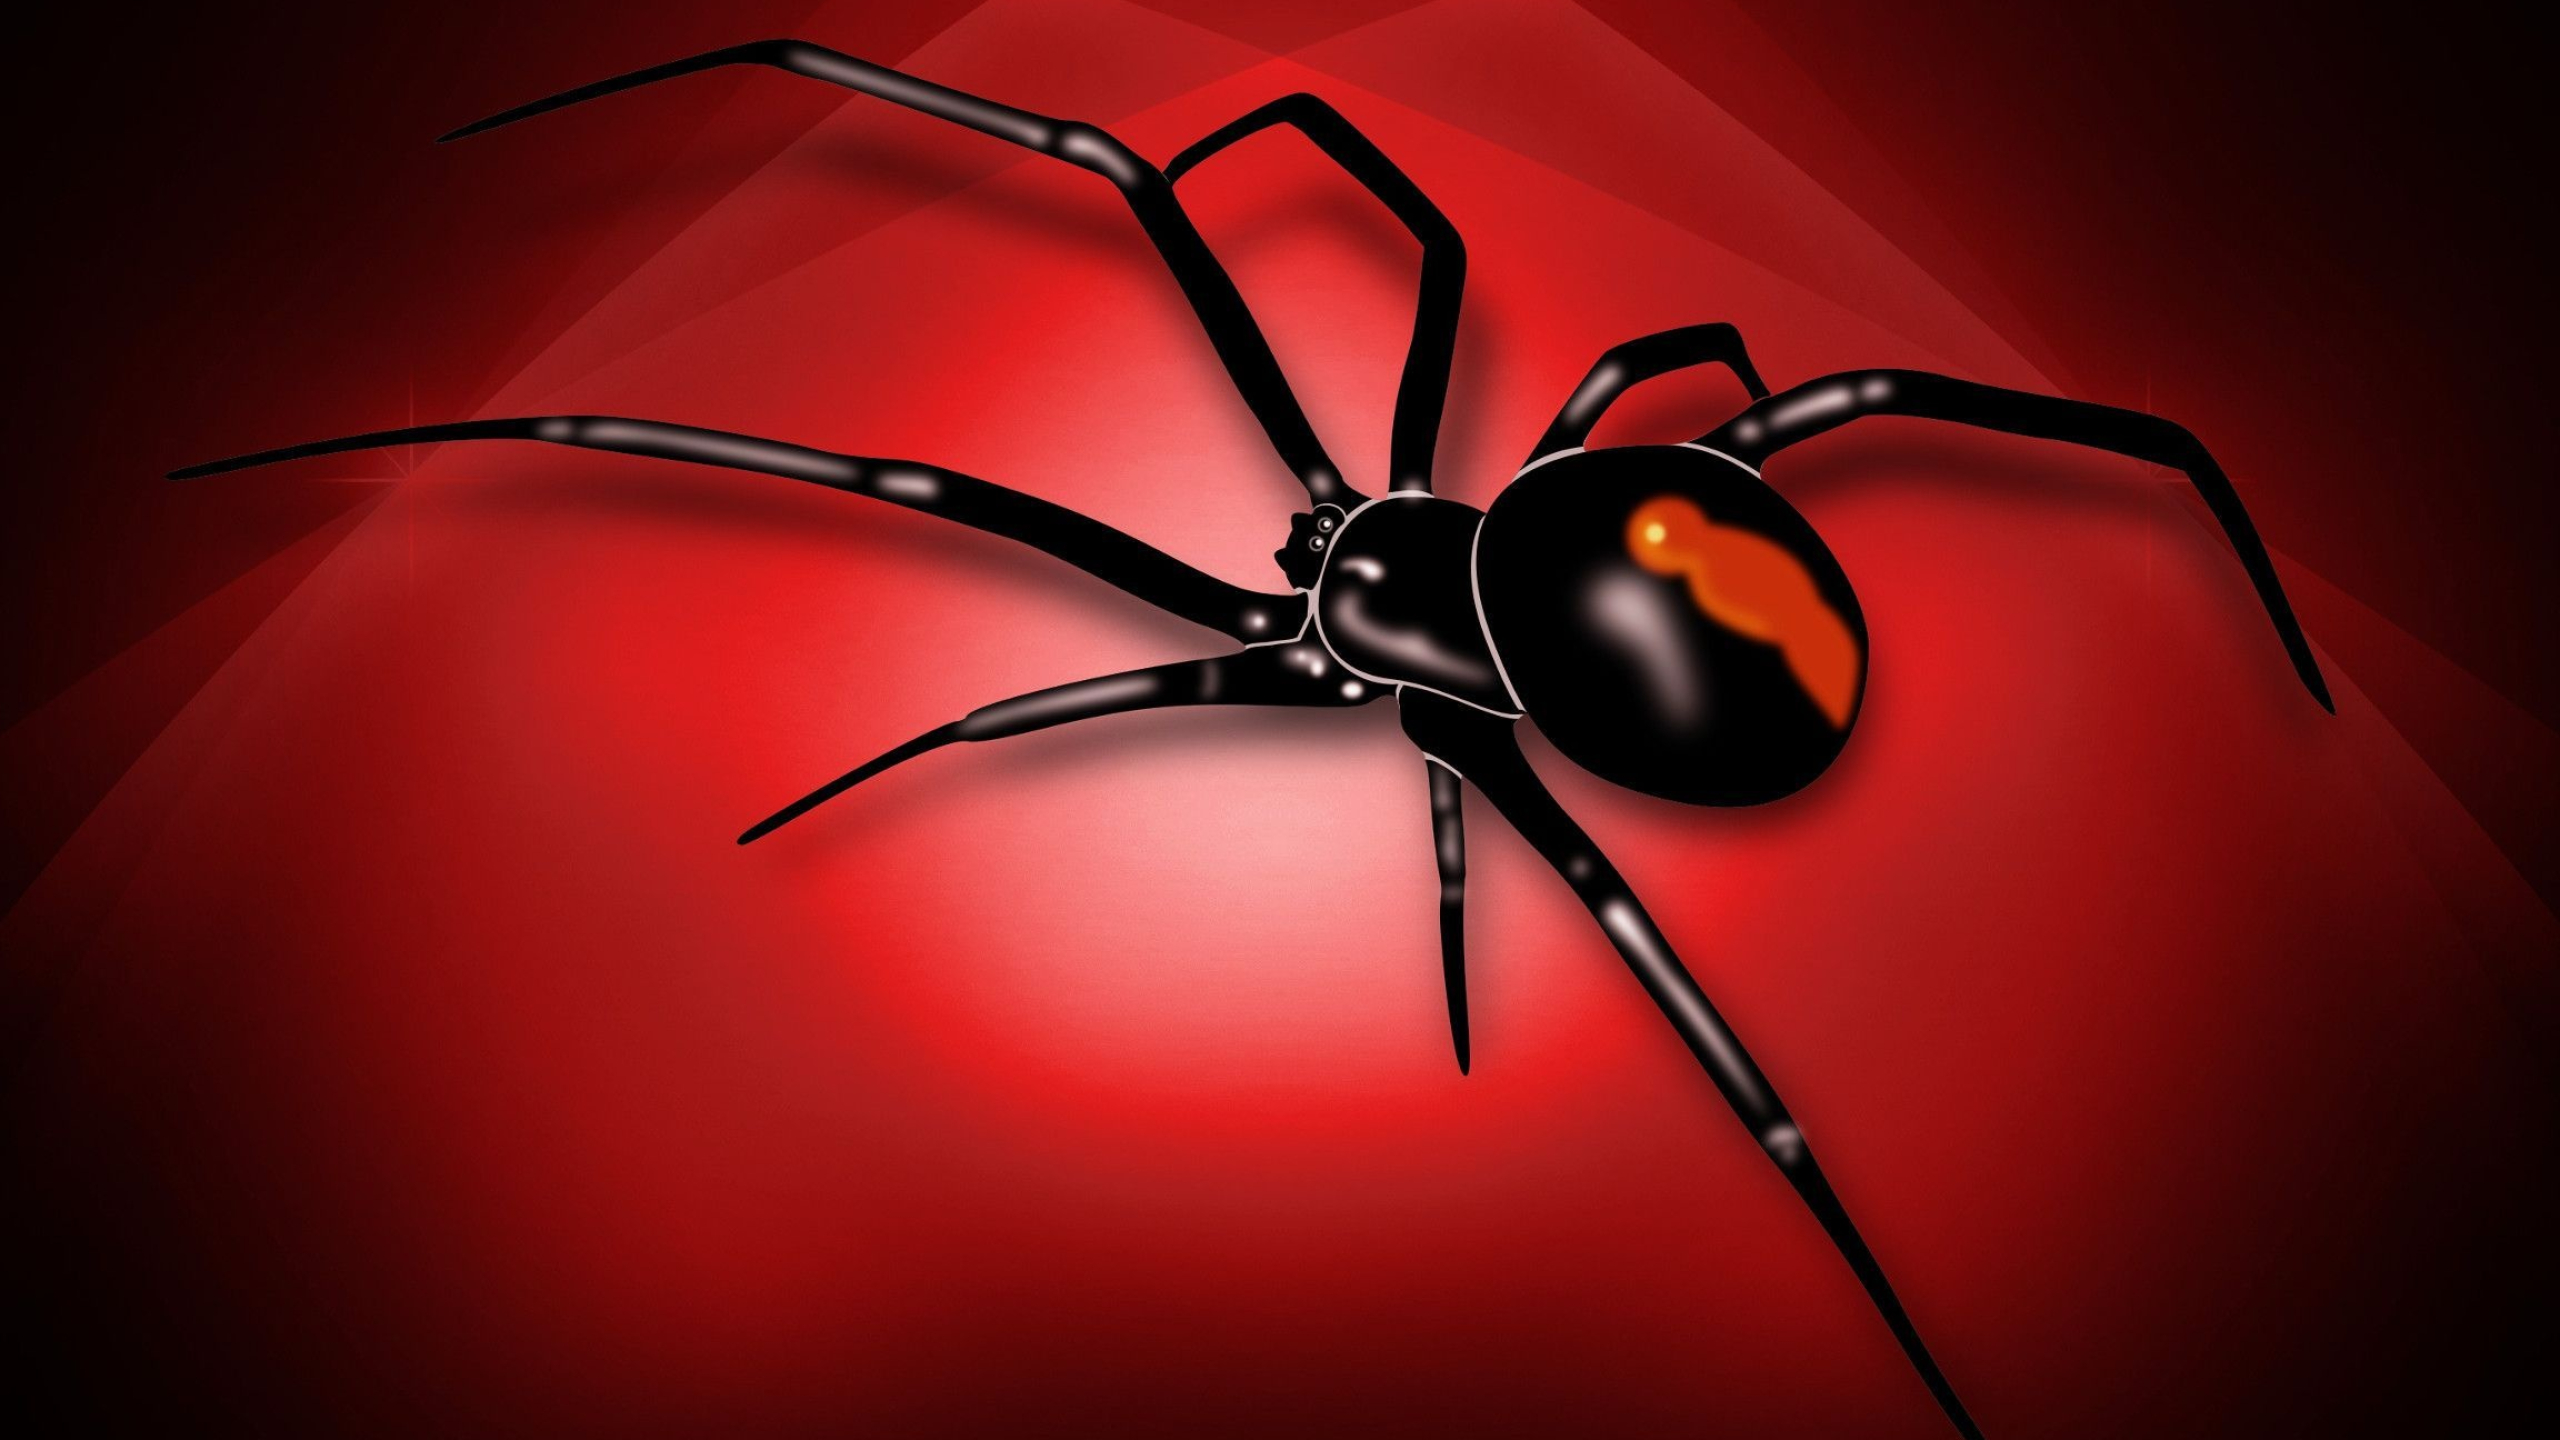 Spider, Black widow spider, Striking wallpapers, Deadly elegance, 2560x1440 HD Desktop